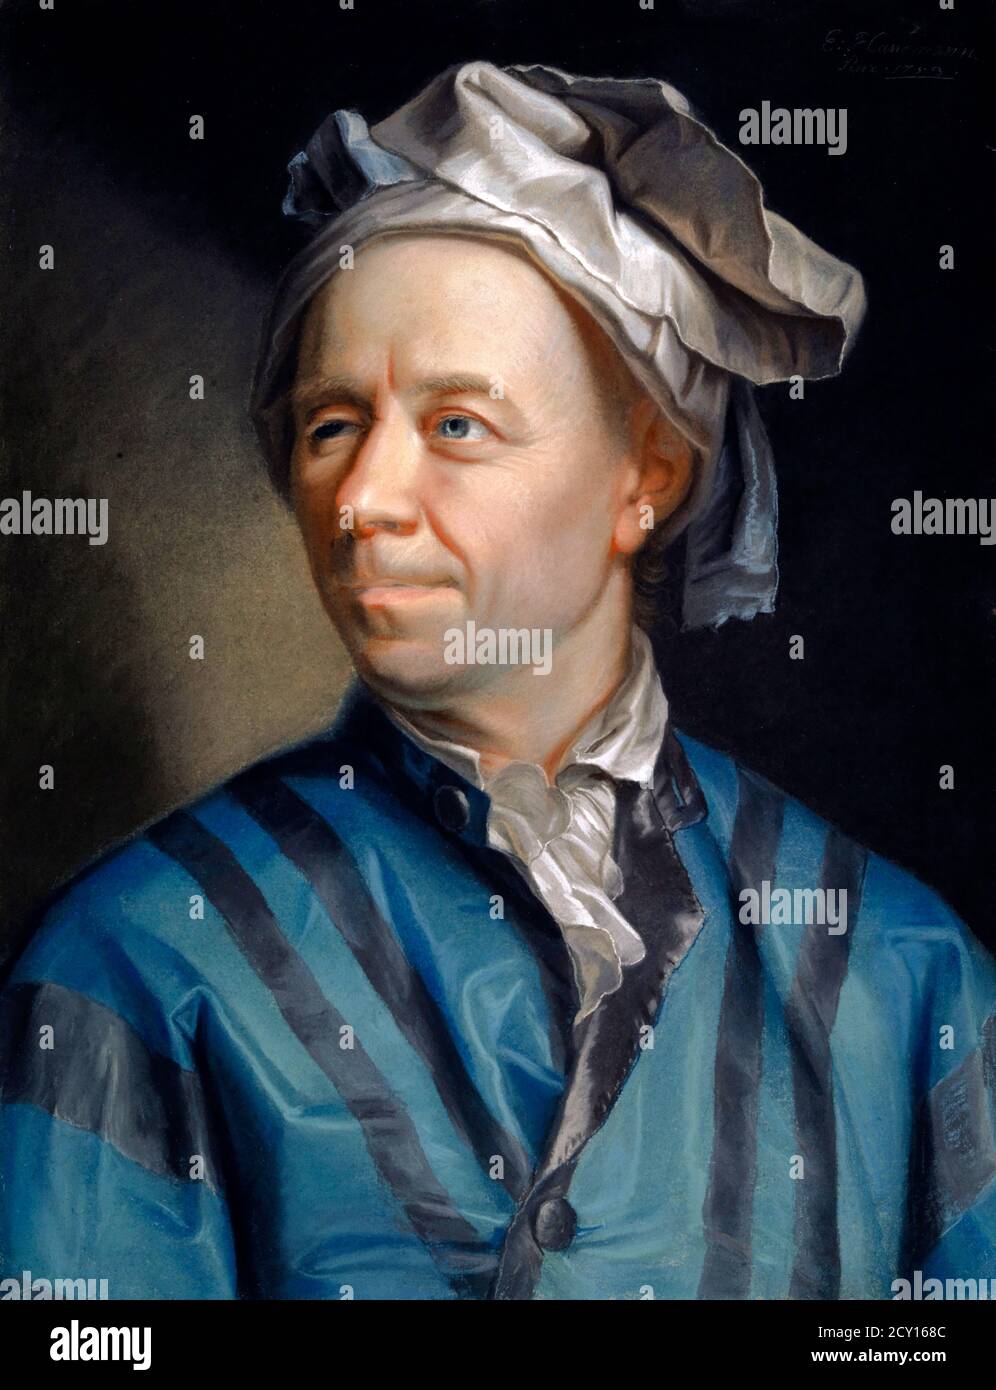 Leonhard Euler. Ritratto del matematico, fisico e astronomo svizzero, Leonhard Euler (1707-1783) di Jakob Emanuel Hanmann, pastello su carta, 1753 Foto Stock